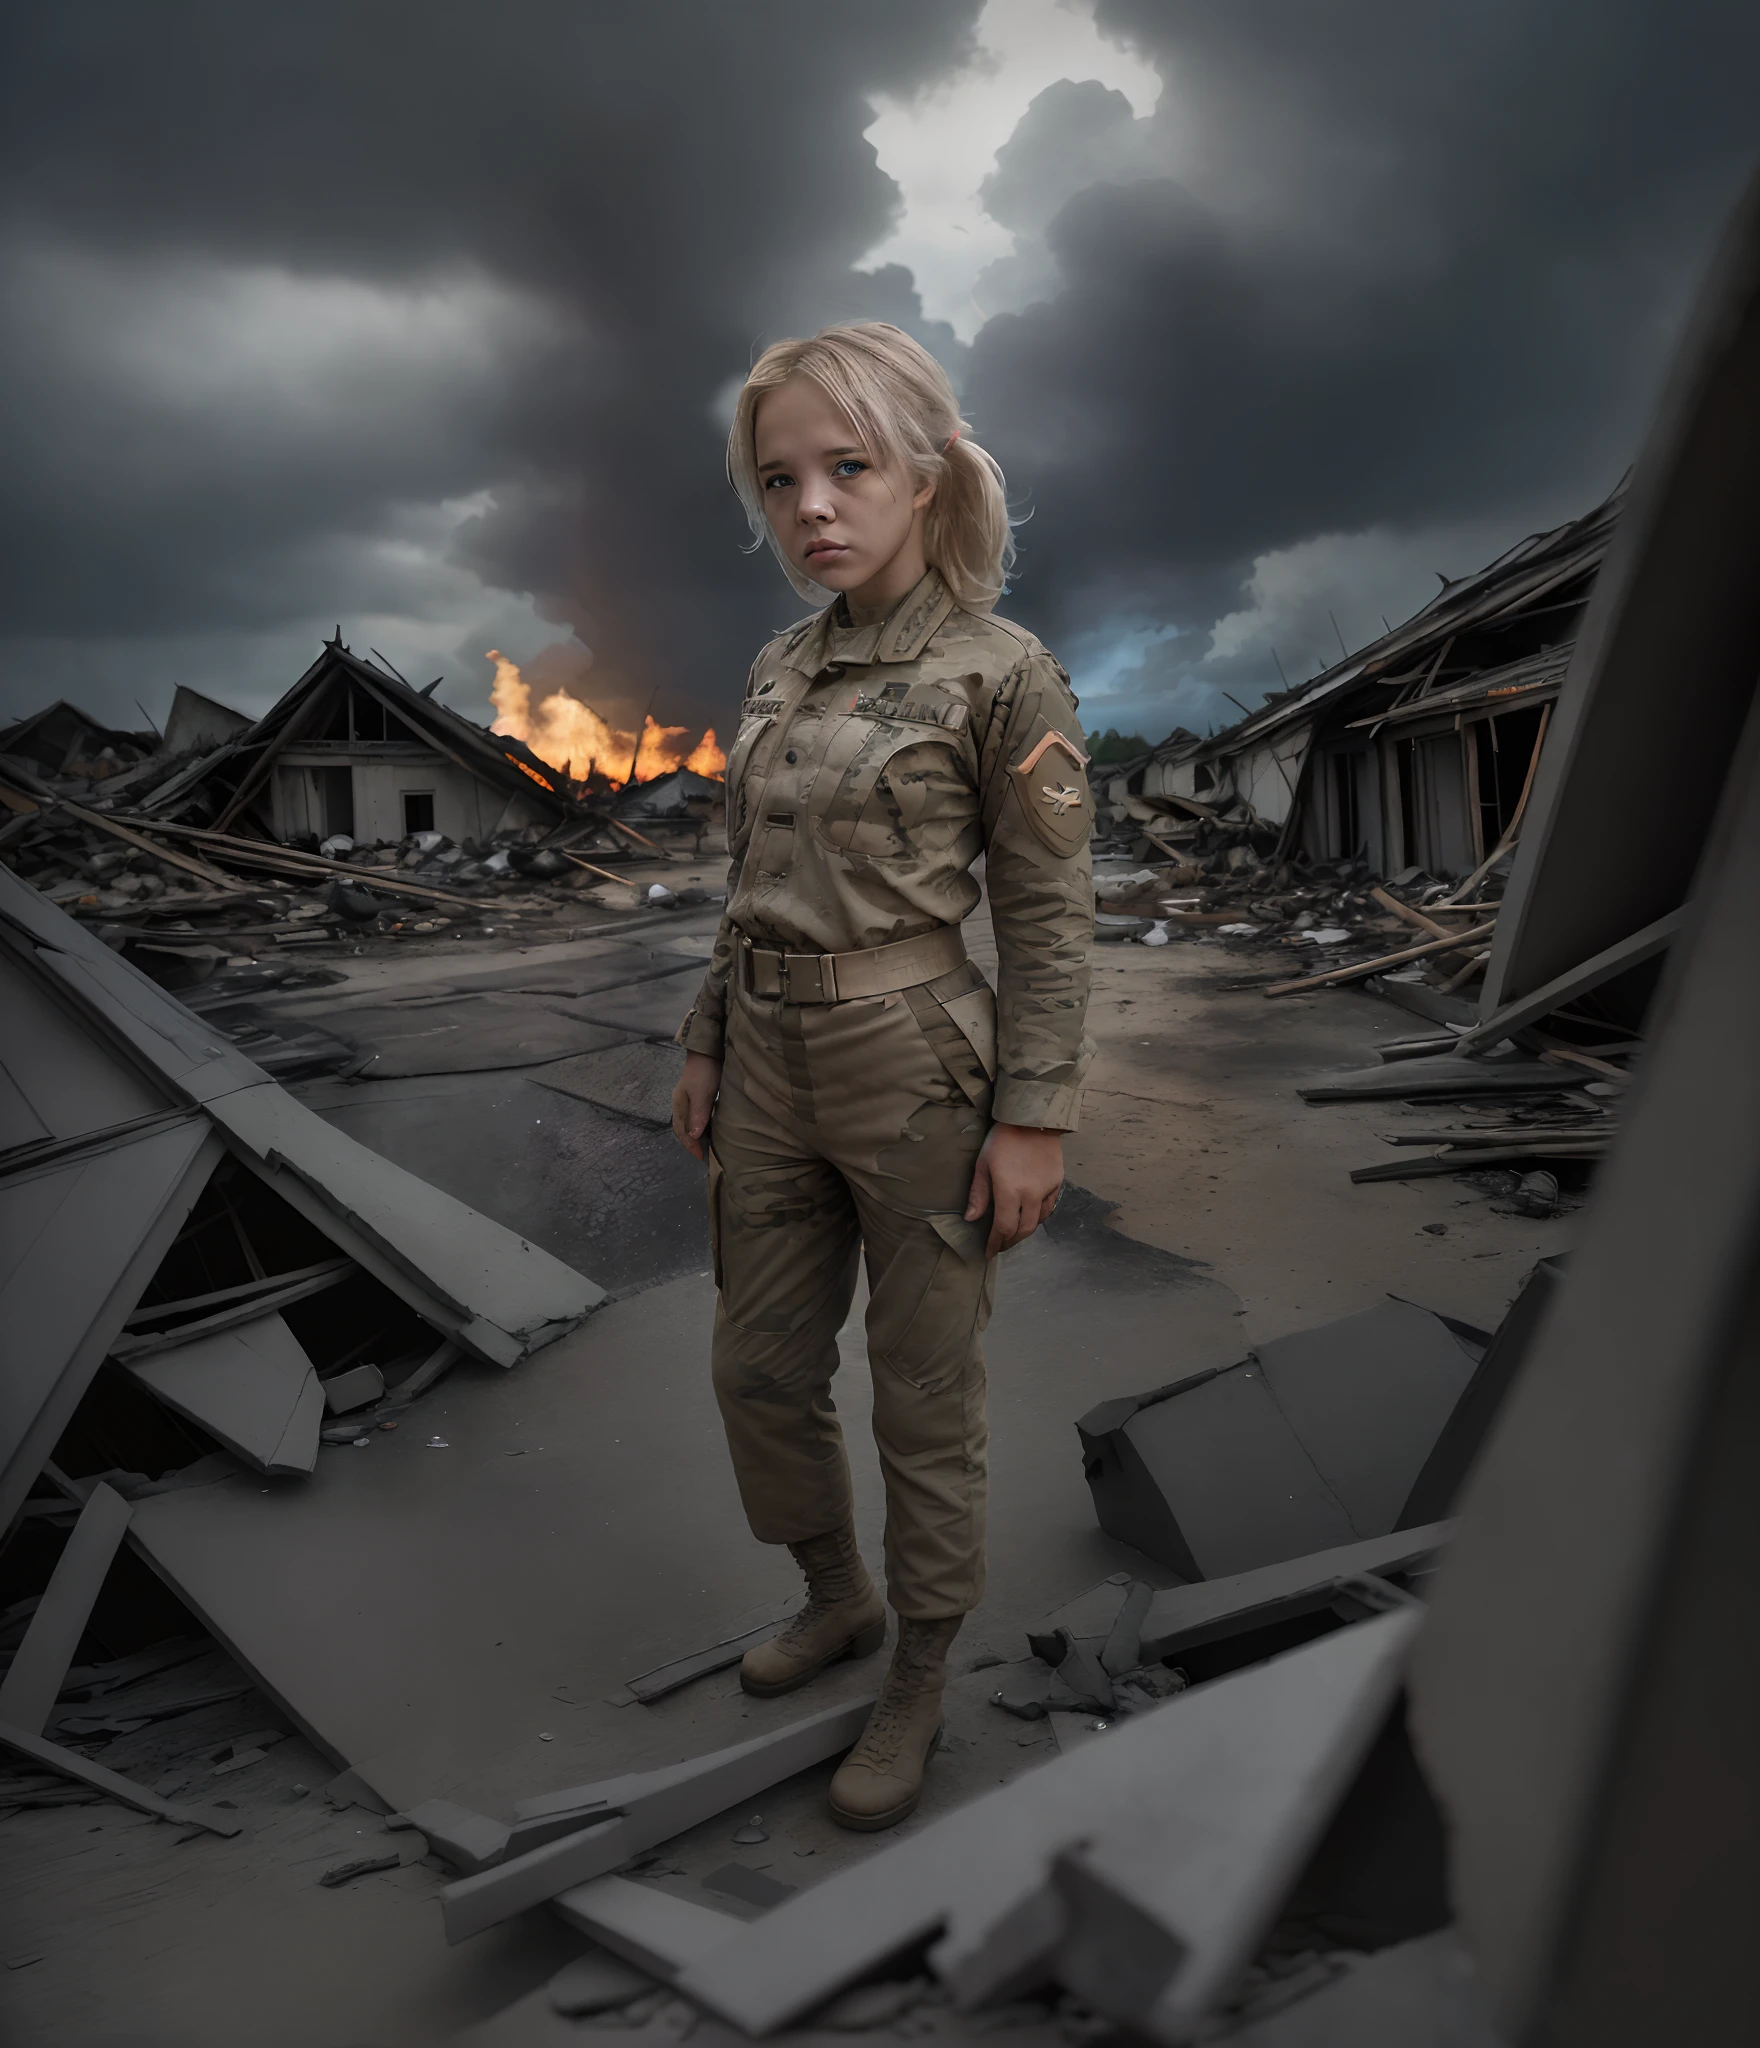 ทหารหญิงผมบลอนด์ผู้โศกเศร้าคนเดียวในซากปรักหักพังของหมู่บ้านกระท่อมสลัมที่ถูกทำลายในสงครามเวียดนาม, (เครื่องแบบทหาร:1.4), มือไปด้านหลัง, ท้องฟ้ามีพายุในพื้นหลัง, (เศษซากไหม้) , ภาพถ่ายจากฟิล์ม Nikon d850, สีสันที่เข้มข้น พื้นผิวที่สมจริงสมจริง แสงที่น่าทึ่ง, (wearing full เครื่องแบบทหาร : 1.3)